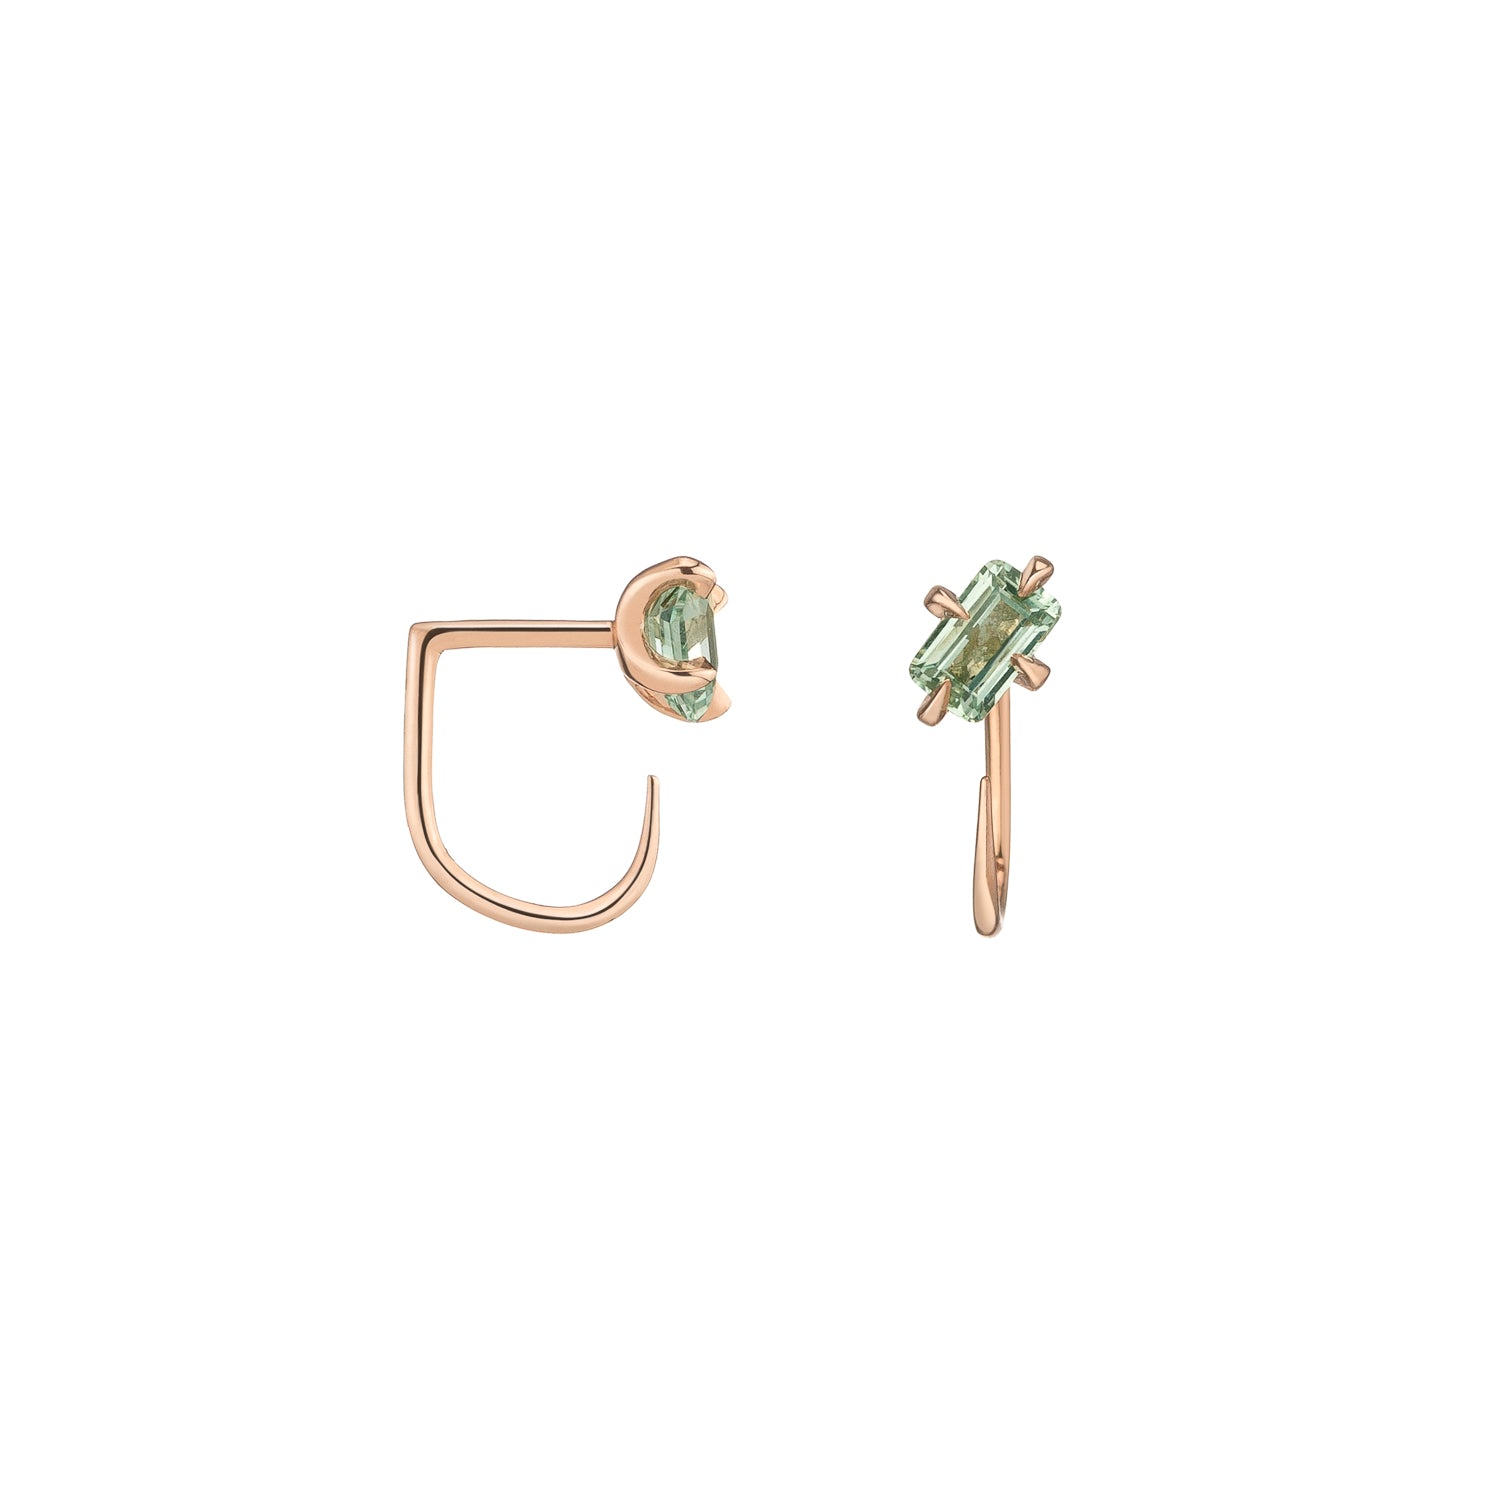 Shahla Karimi Mint Green Sapphire Emerald Cut Claw Earrings in 14K Rose Gold